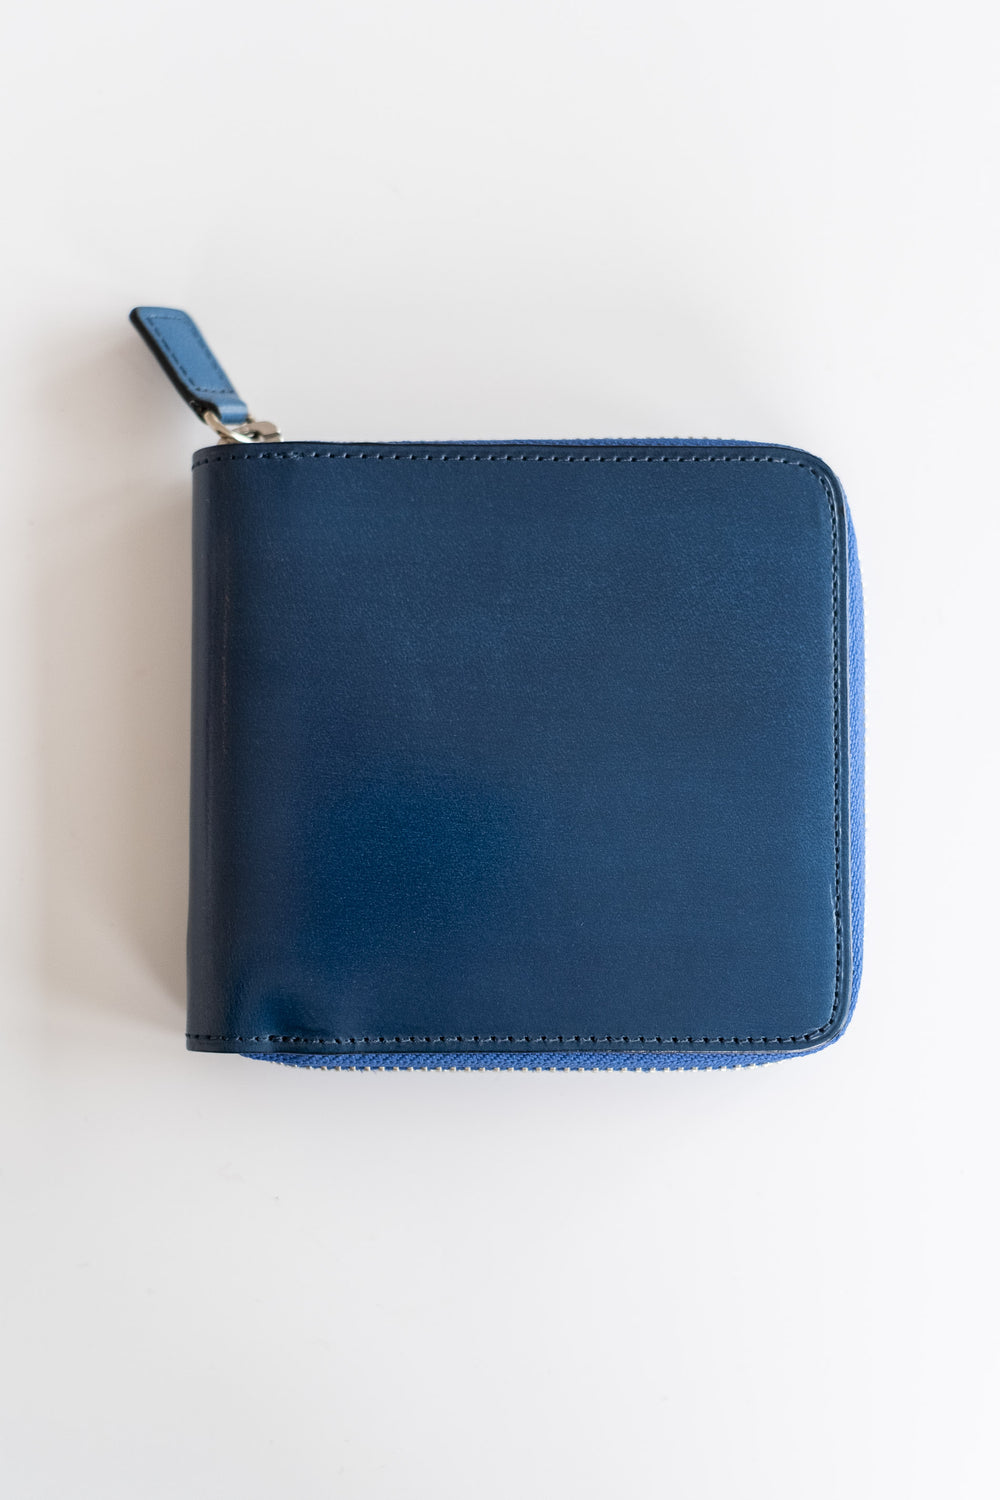 Square Zip Wallet In True Blue